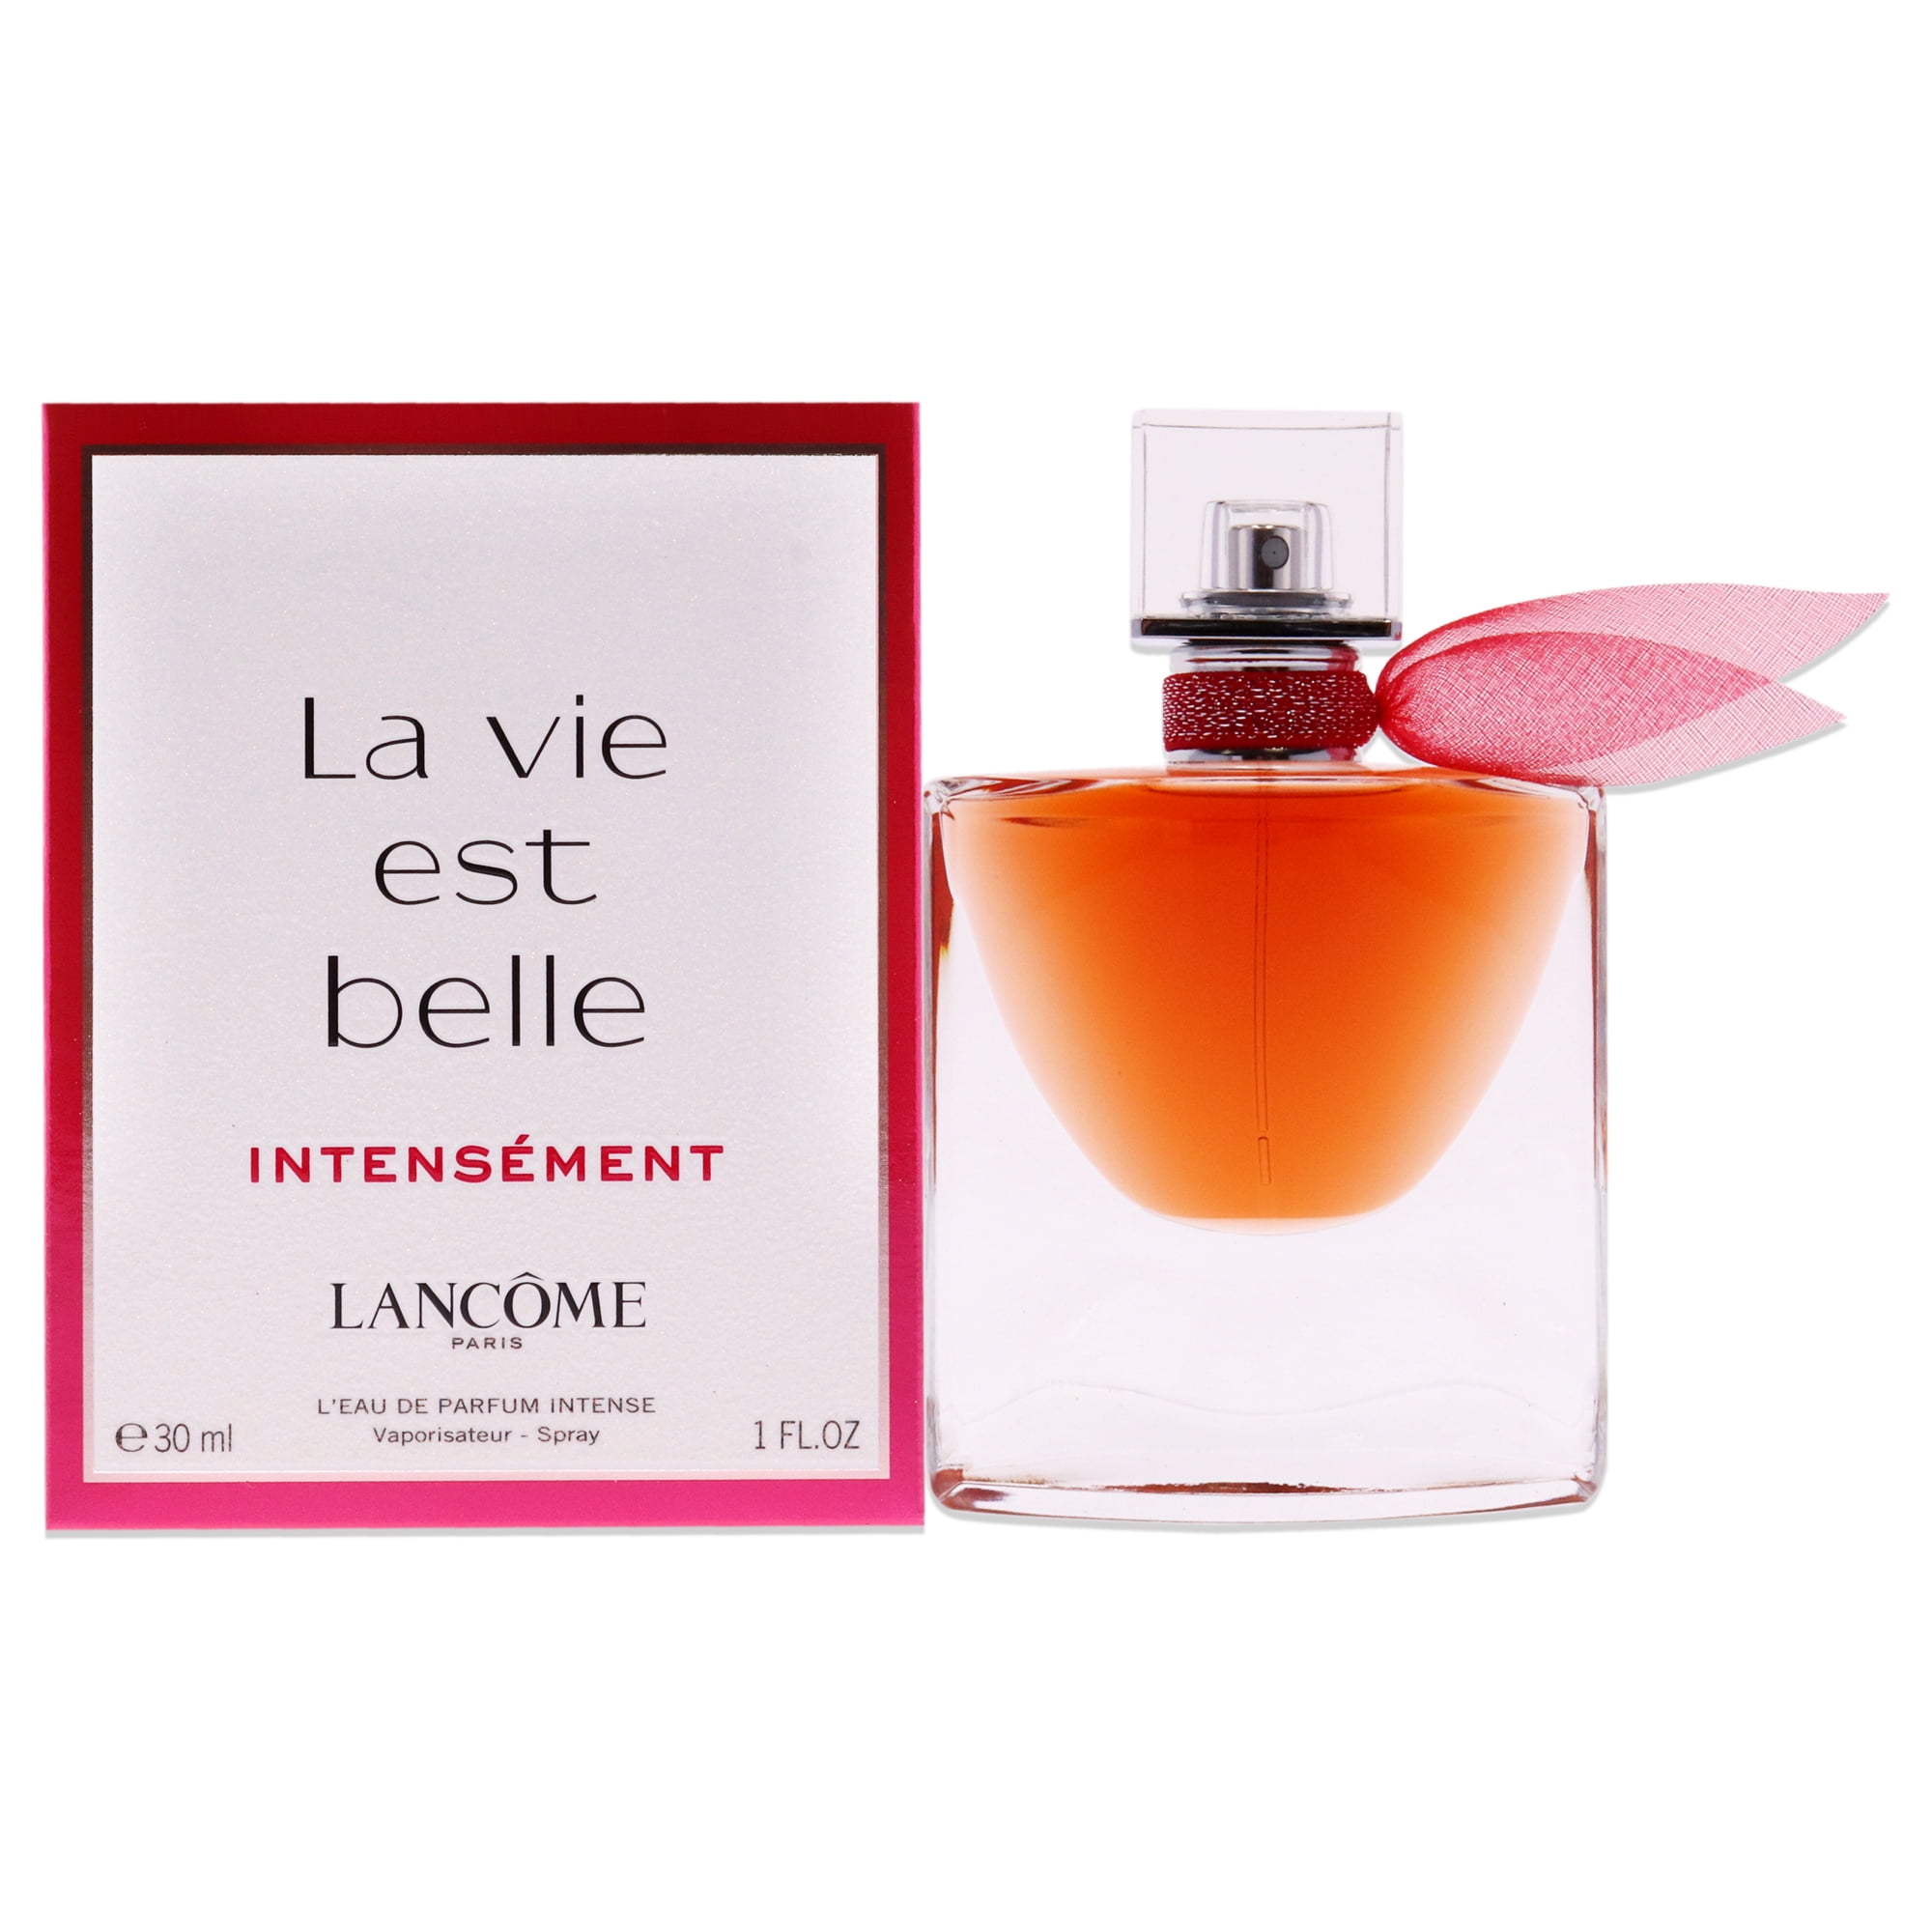 Lancome La Vie Est Belle Intensement, 1 oz LEau de Parfum Intense Spray